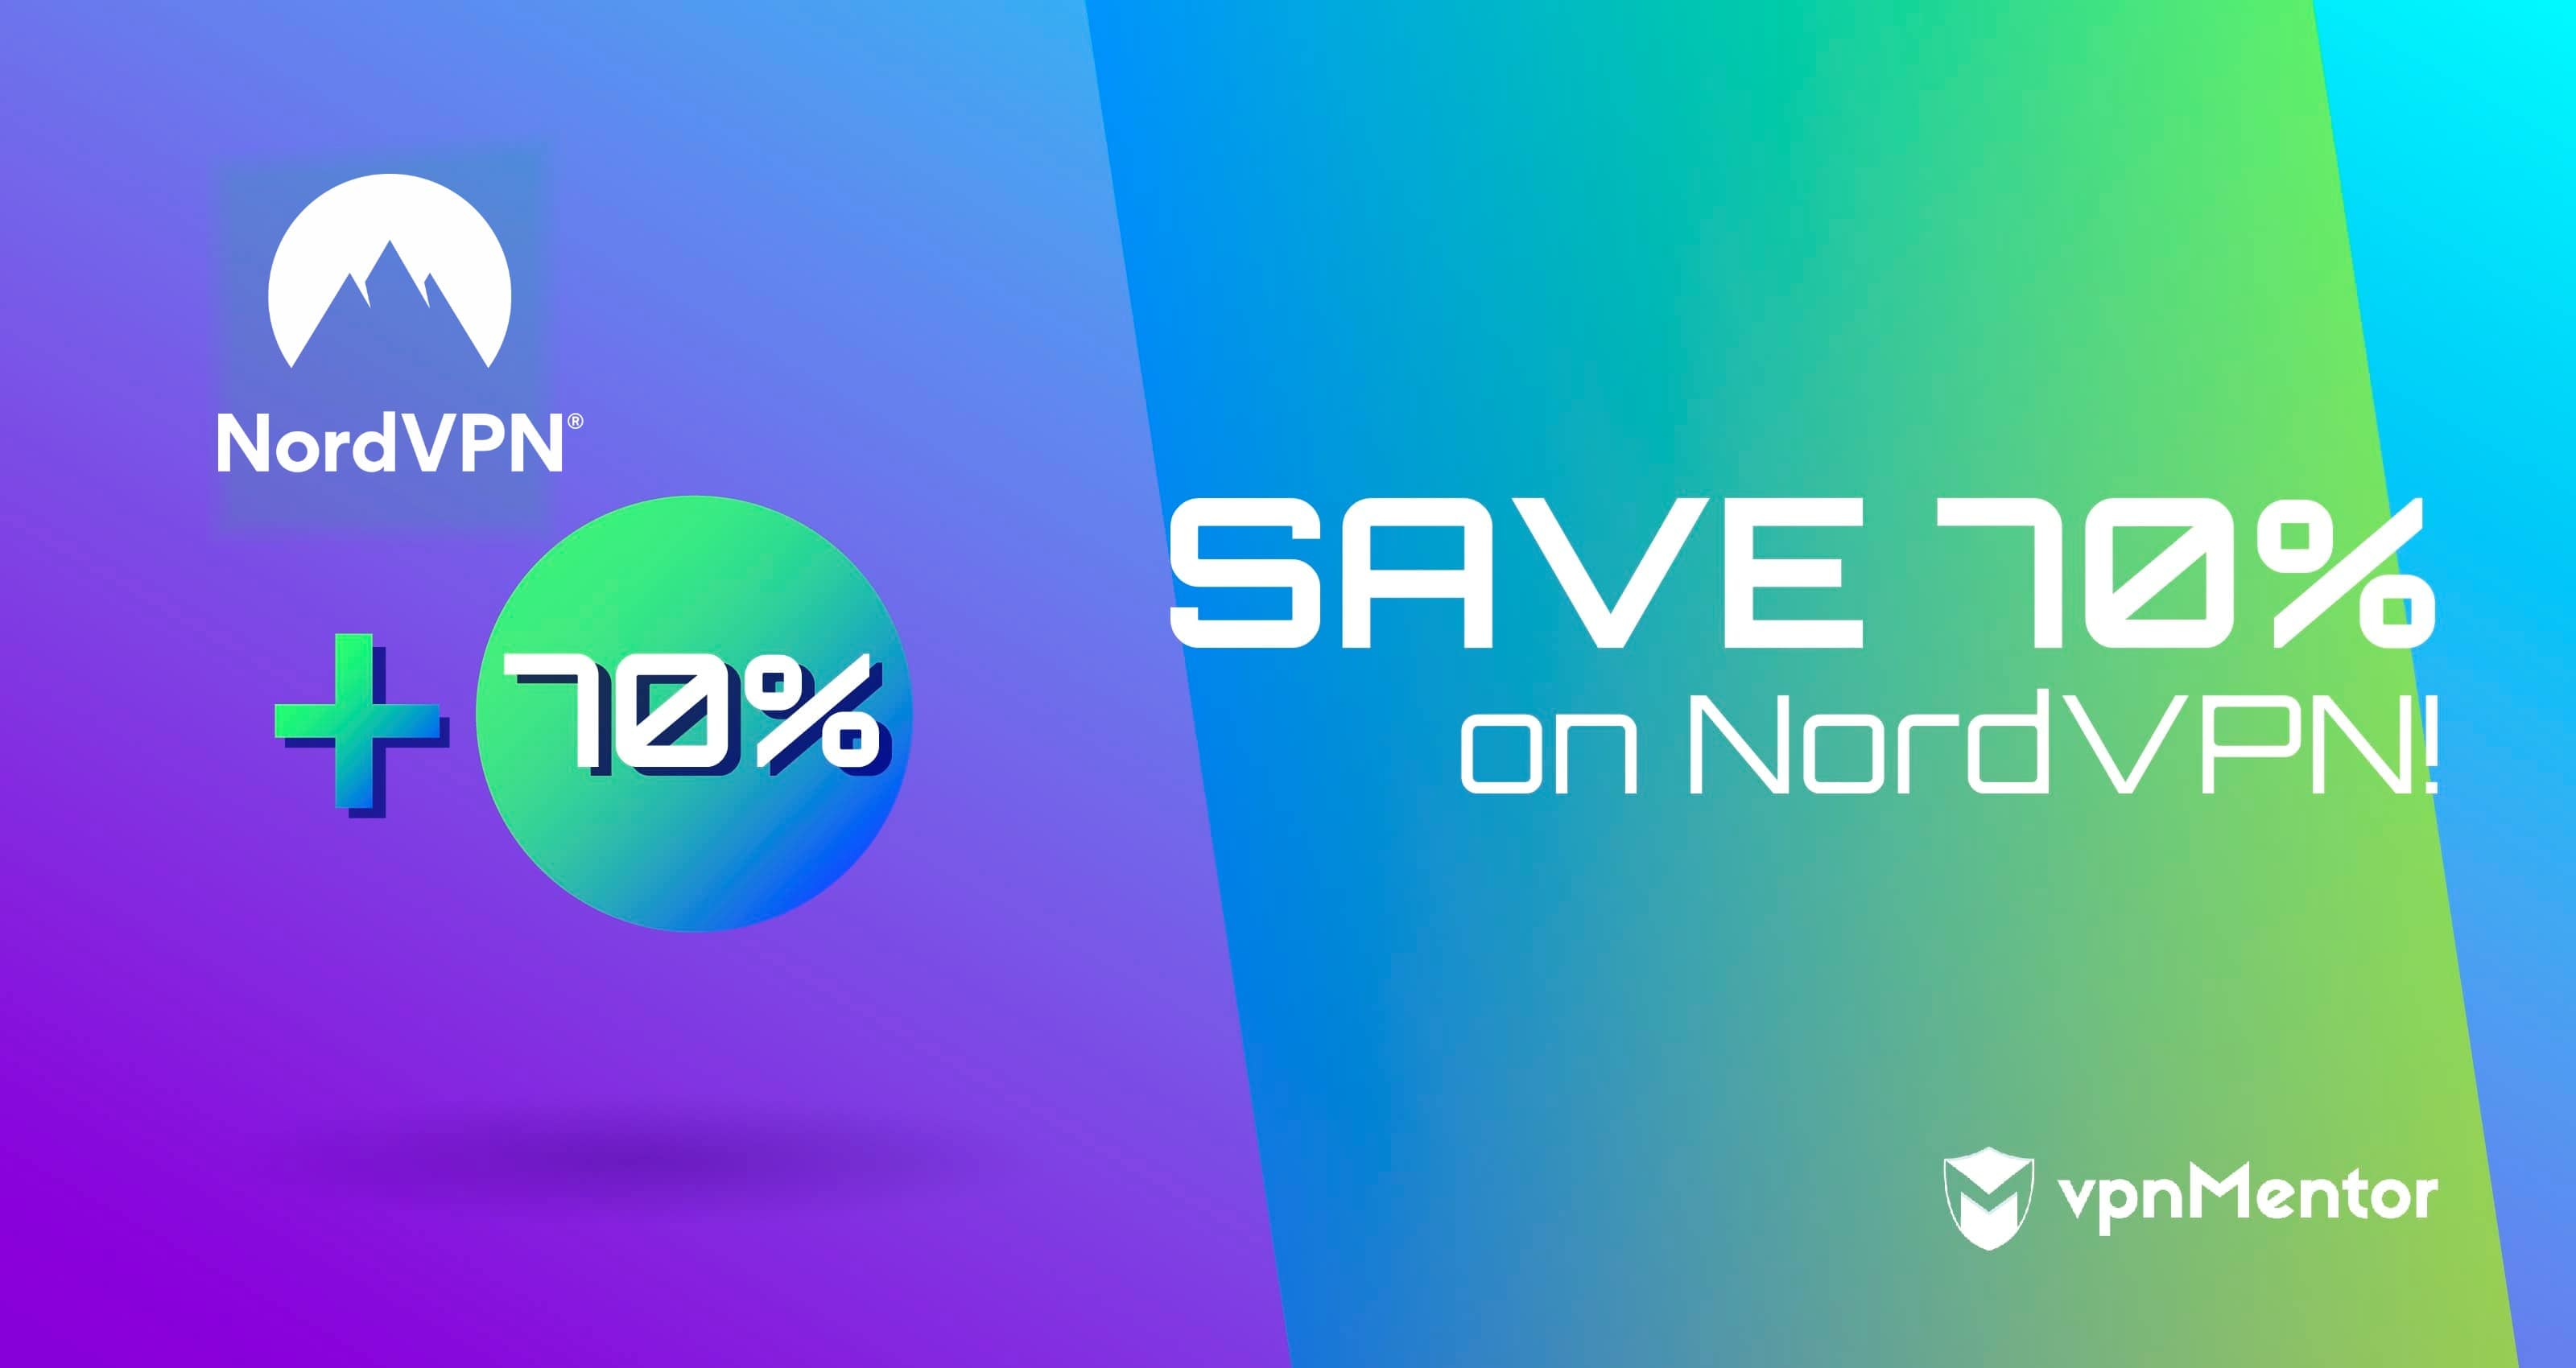 NordVPN kortingscode Juli 2022 - Bespaar 70%! Vermijd de NEPDEALS